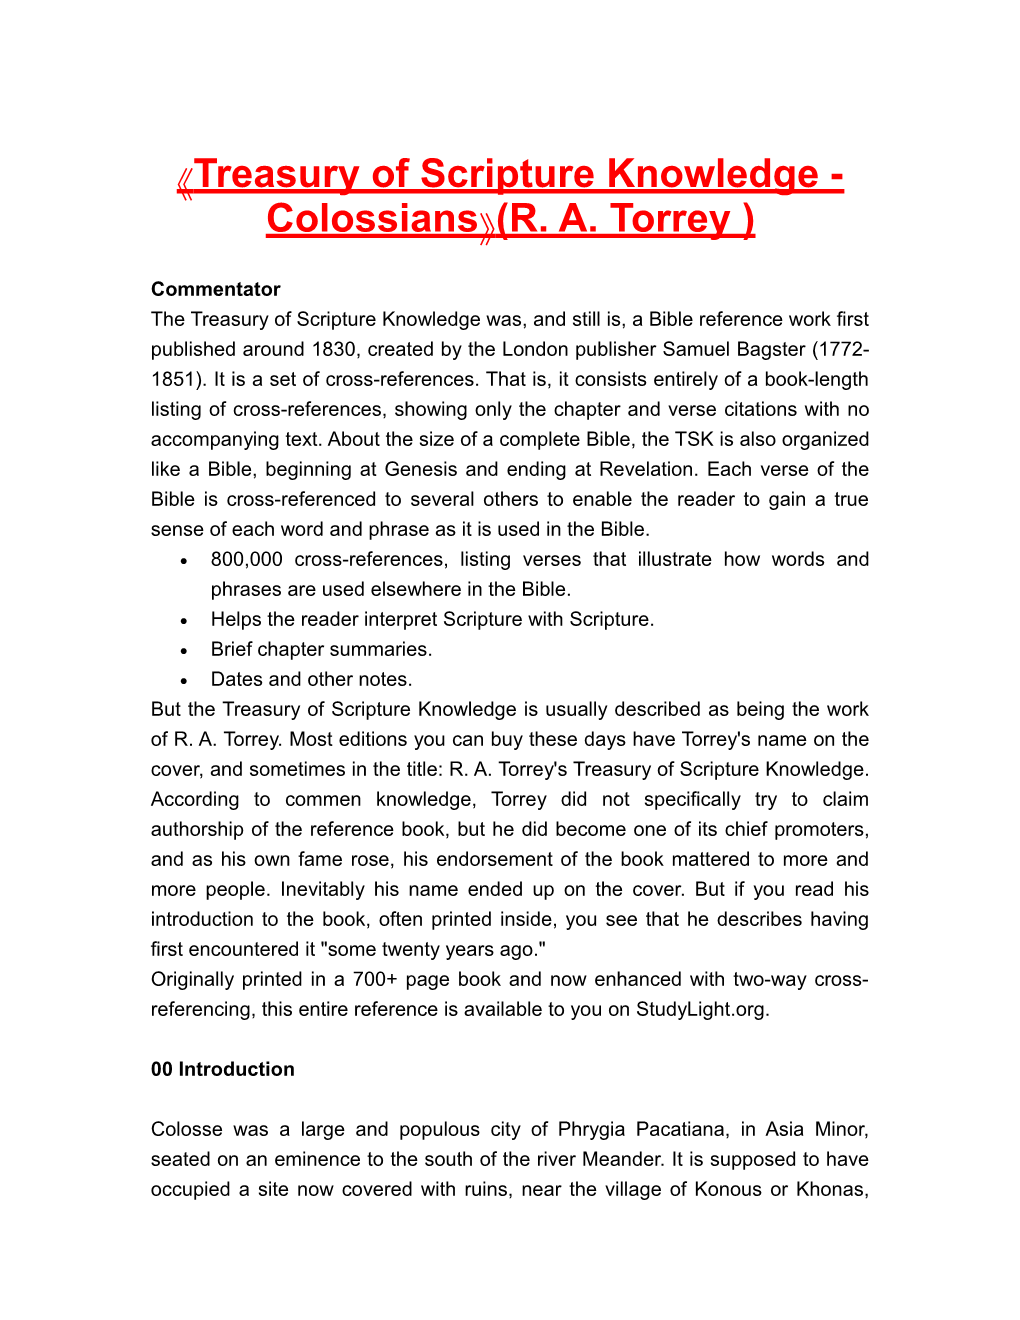 Treasuryofscriptureknowledge - Colossians (R. A.Torrey)